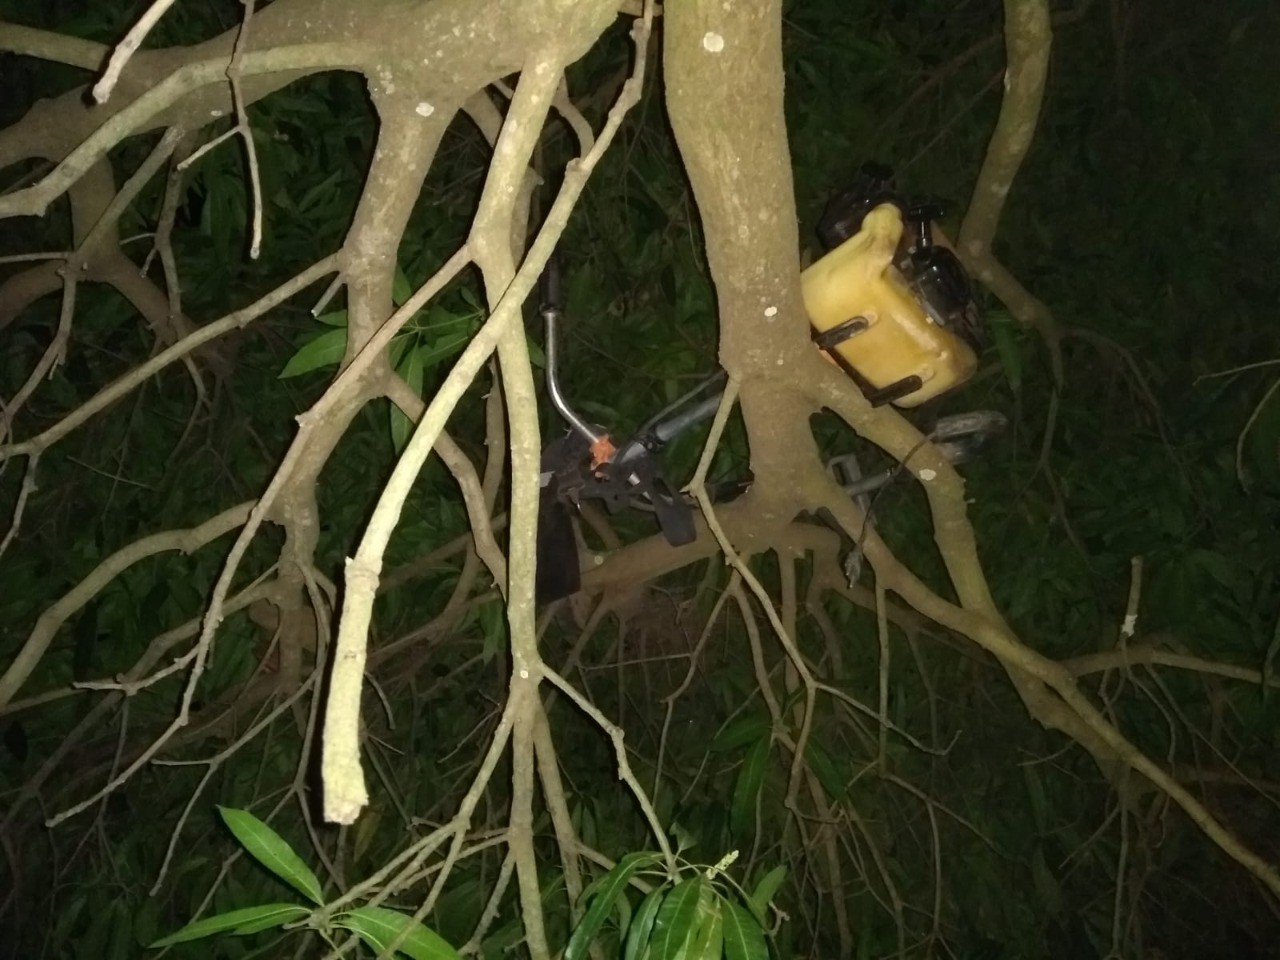 Jovem é preso após esconder objetos furtados em cima de árvore no interior de SP